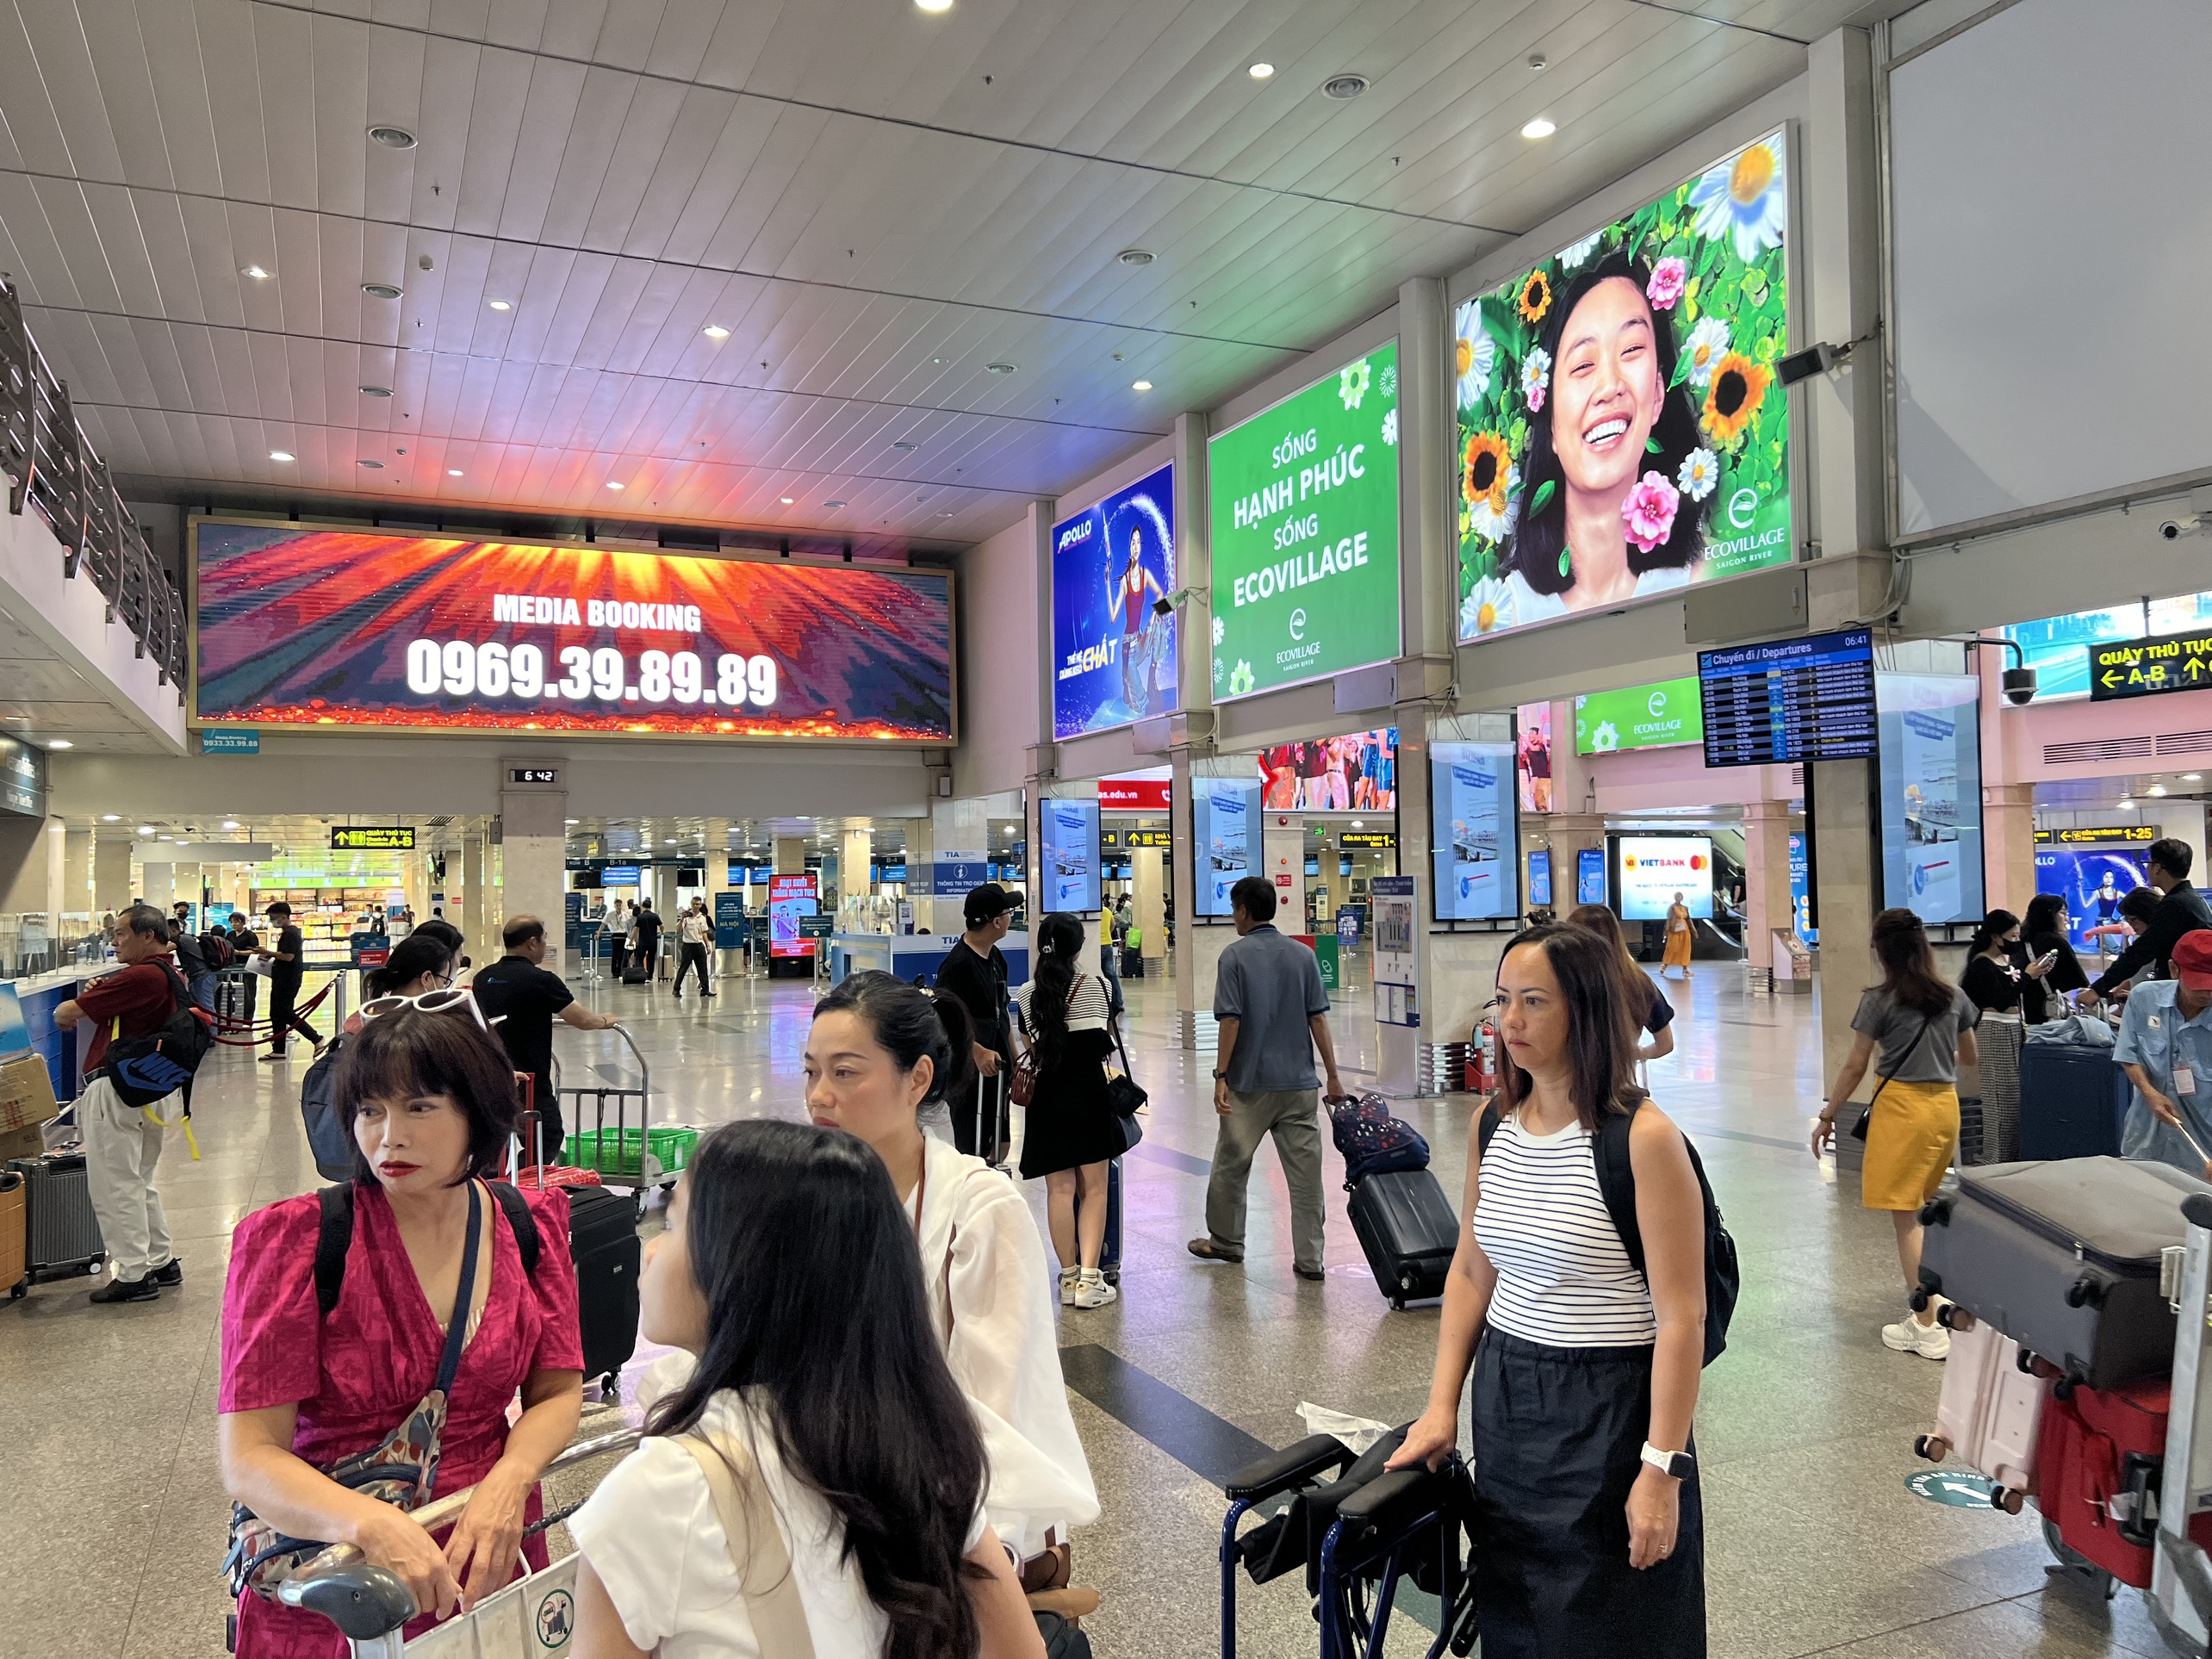 Ngày đầu nghỉ lễ, sân bay Tân Sơn Nhất thông thoáng dù đón lượng khách đông- Ảnh 3.